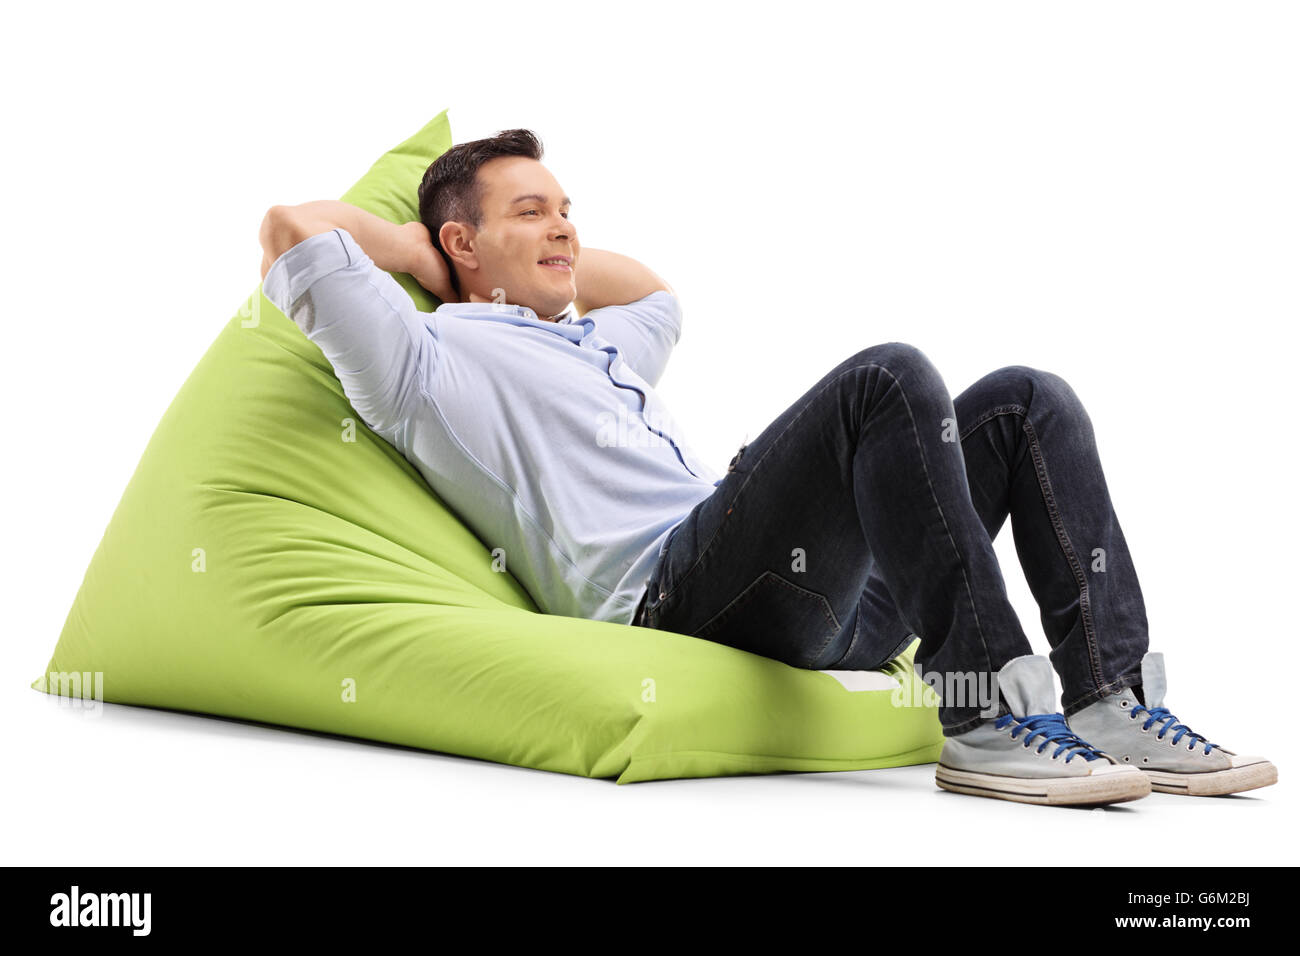 Entspannte junger Kerl Verlegung auf eine angenehm grüne Sitzsack isoliert auf weißem Hintergrund Stockfoto